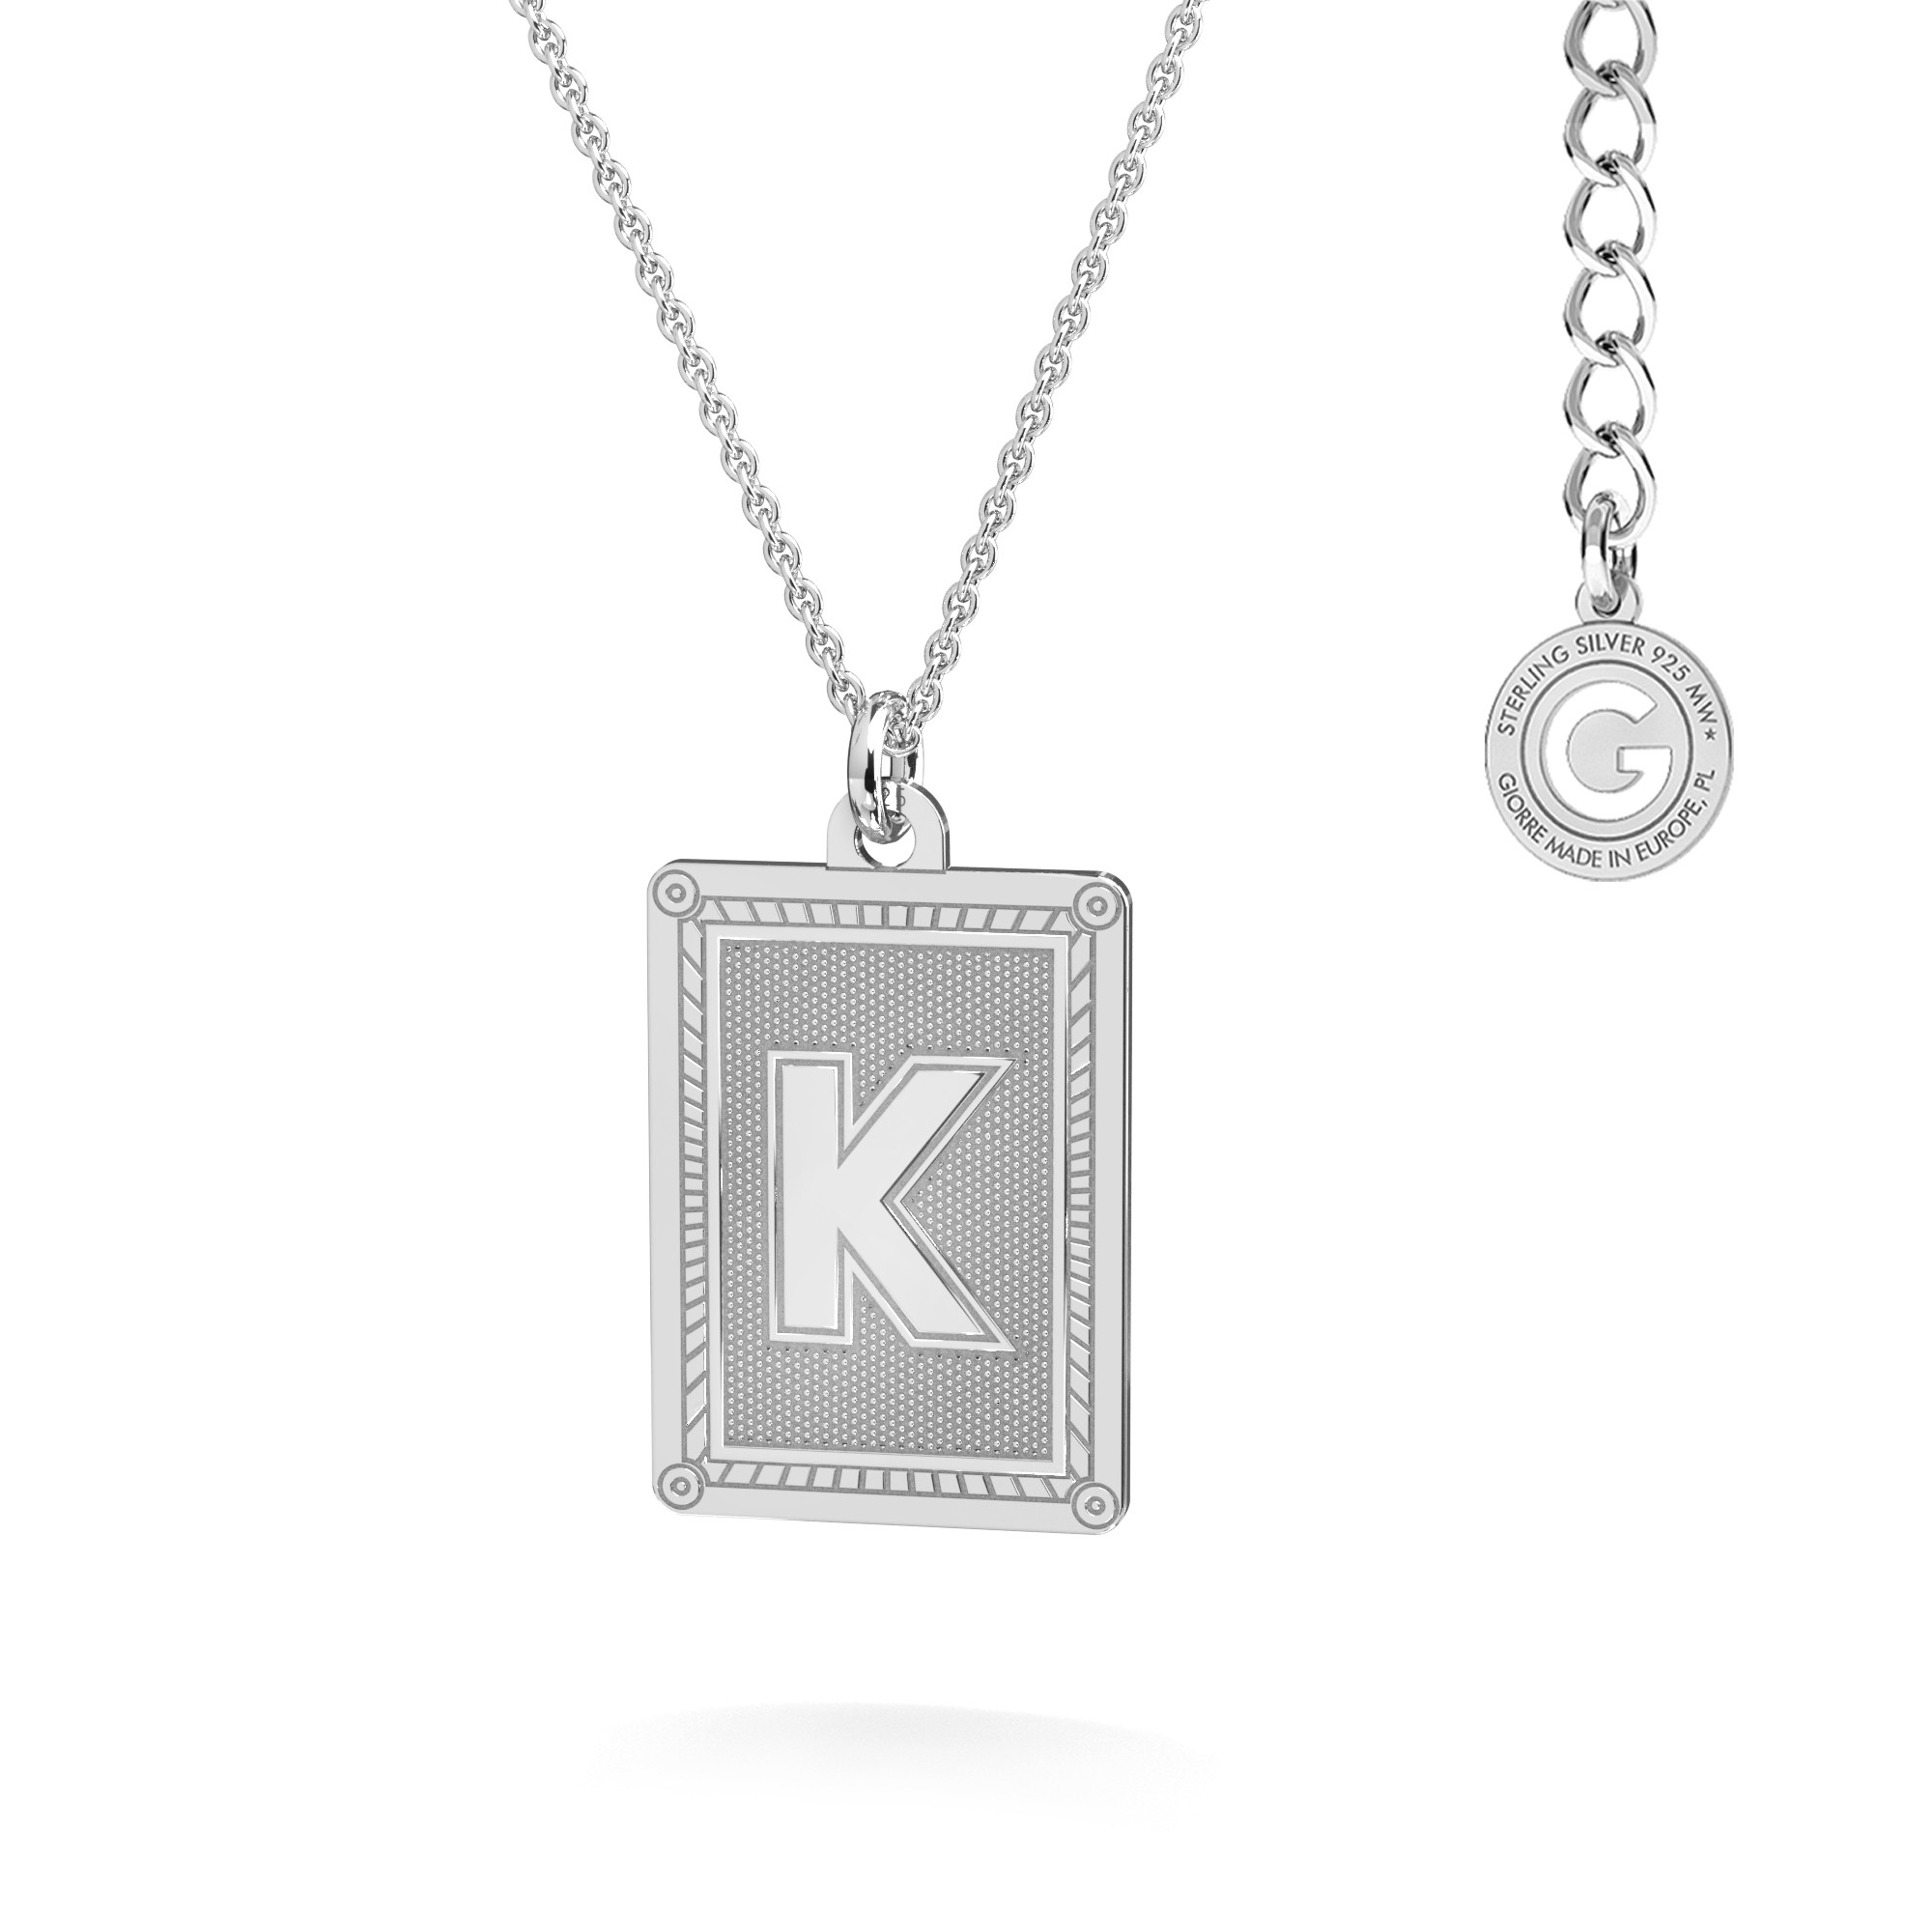 Necklace Giorre brand, silver 925